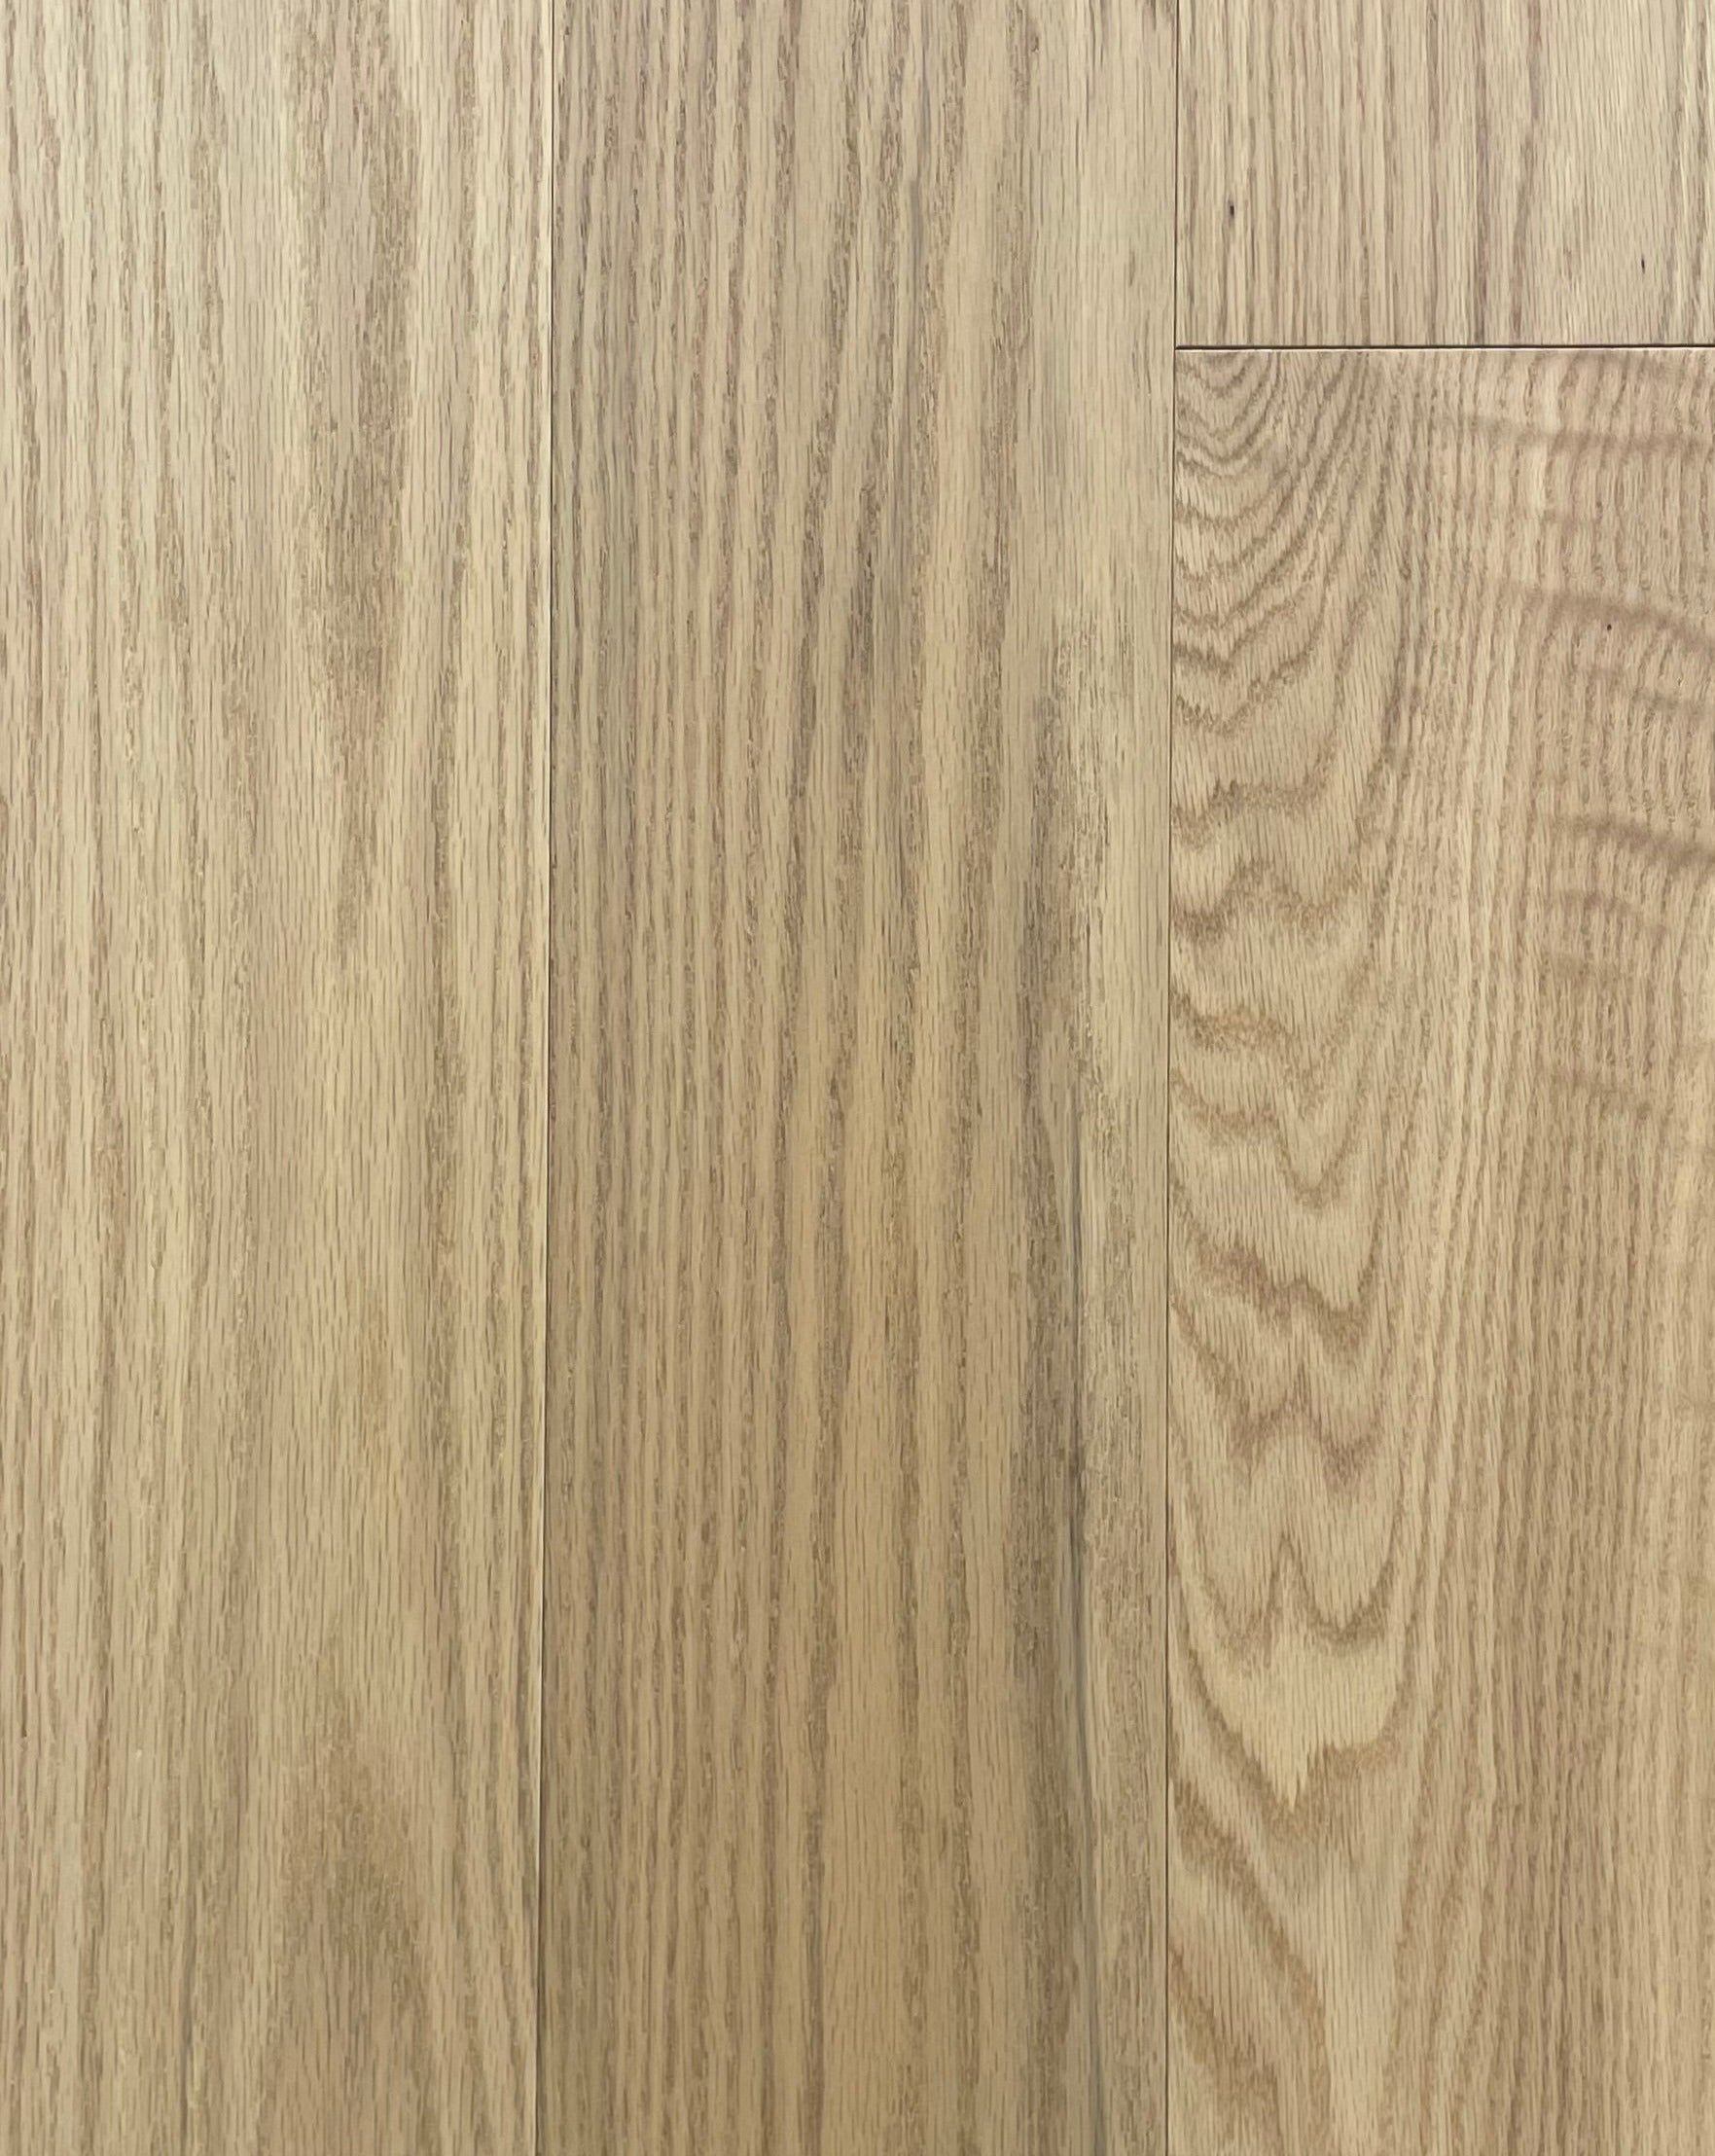 Engineered Oak: Amber $5.99/sqf 20.96 sqf/Box